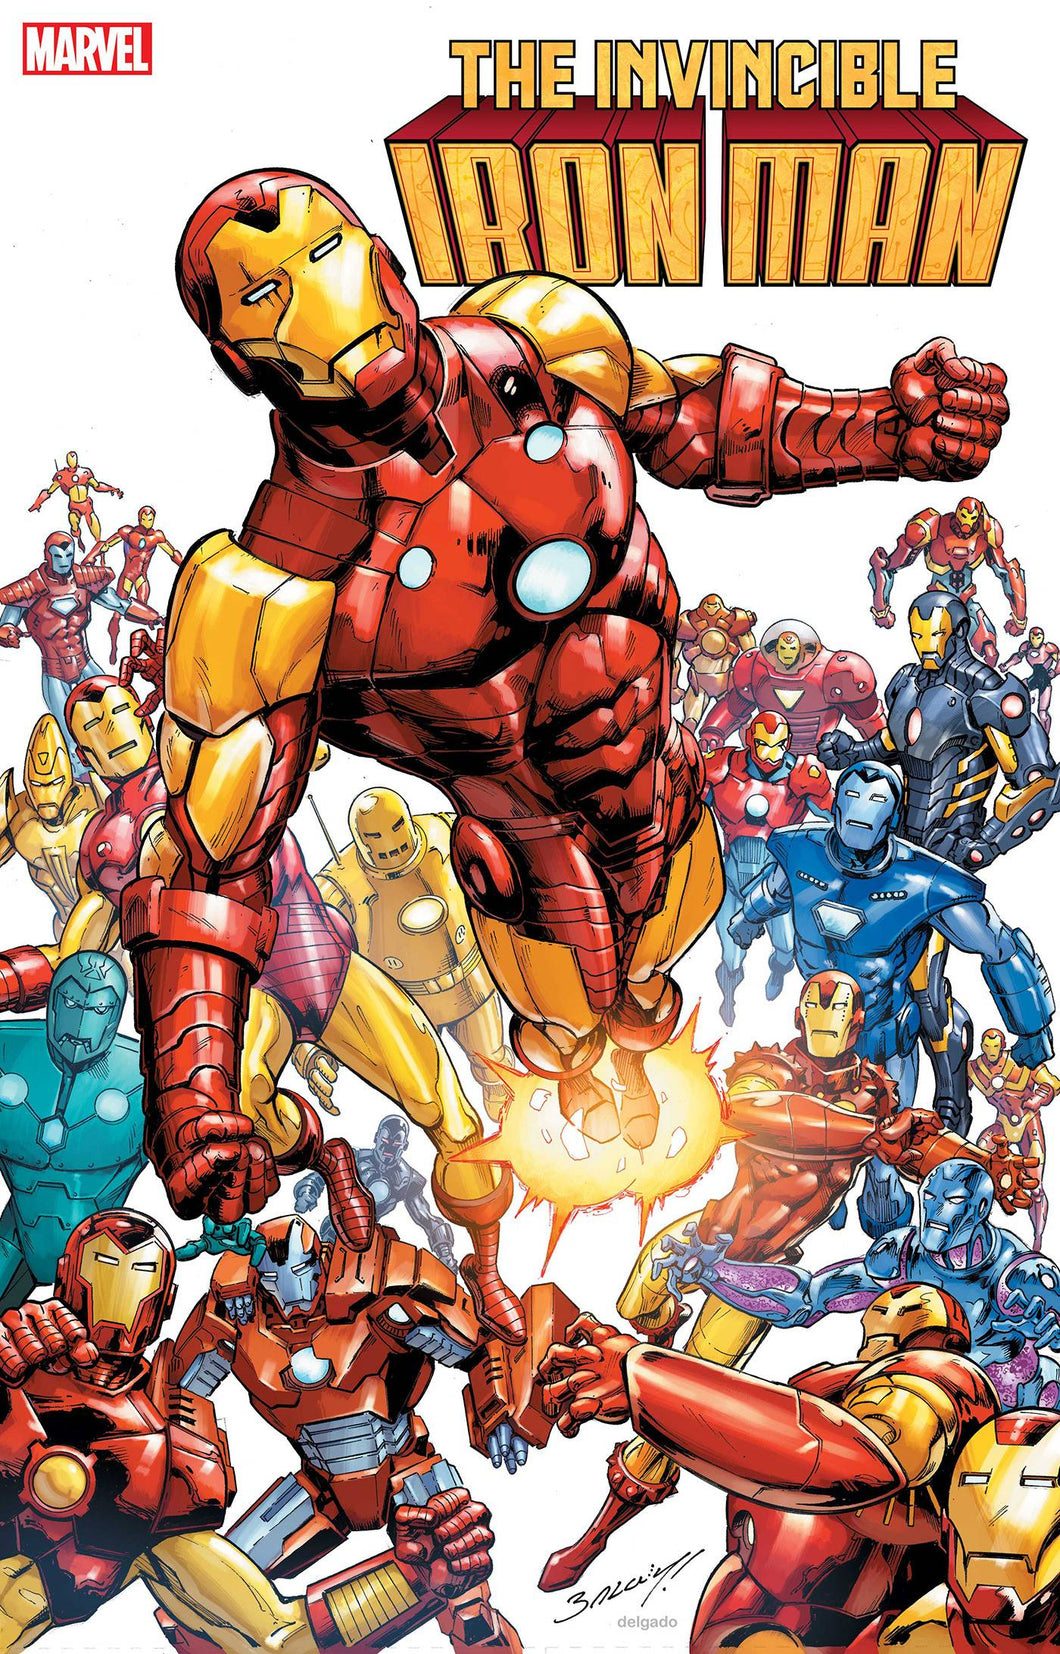 Invincible Iron Man 1